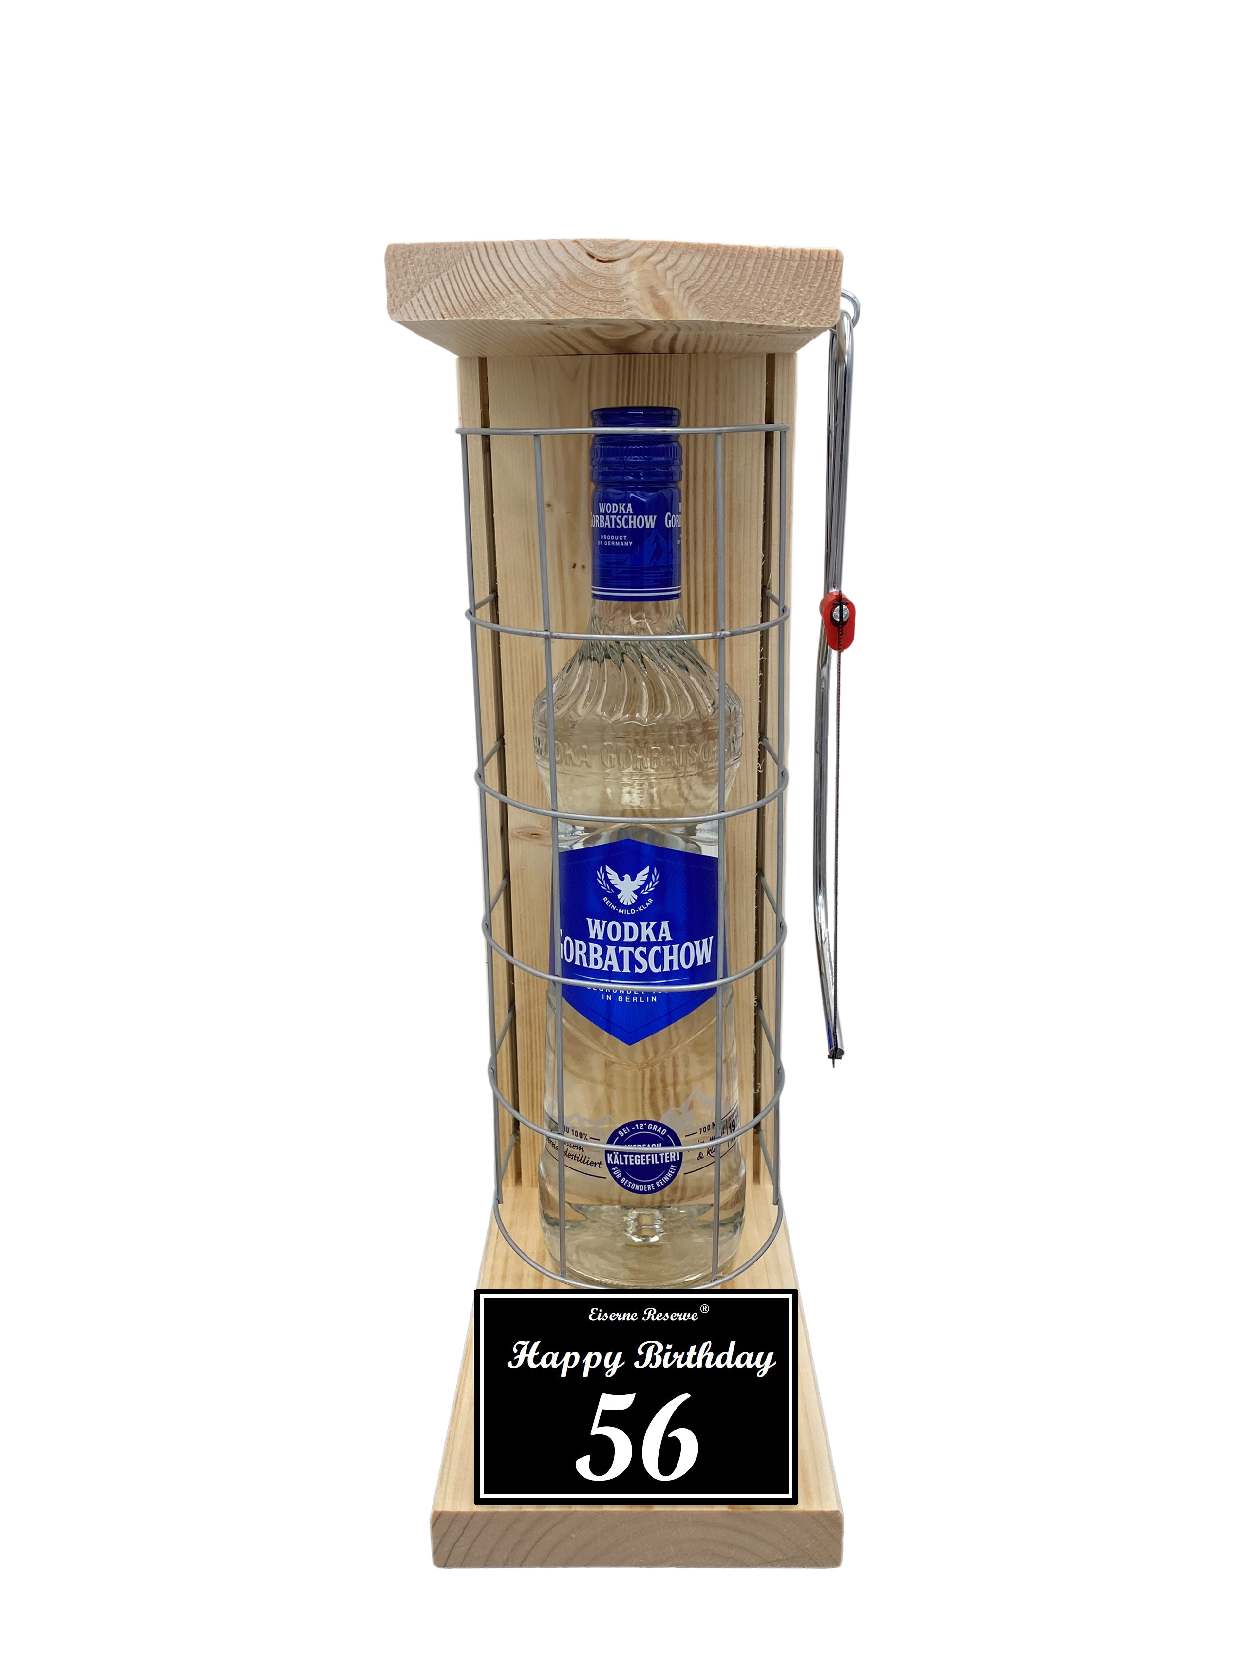 Wodka Geschenk zum 56 Geburtstag - Eiserne Reserve Gitterkäfig